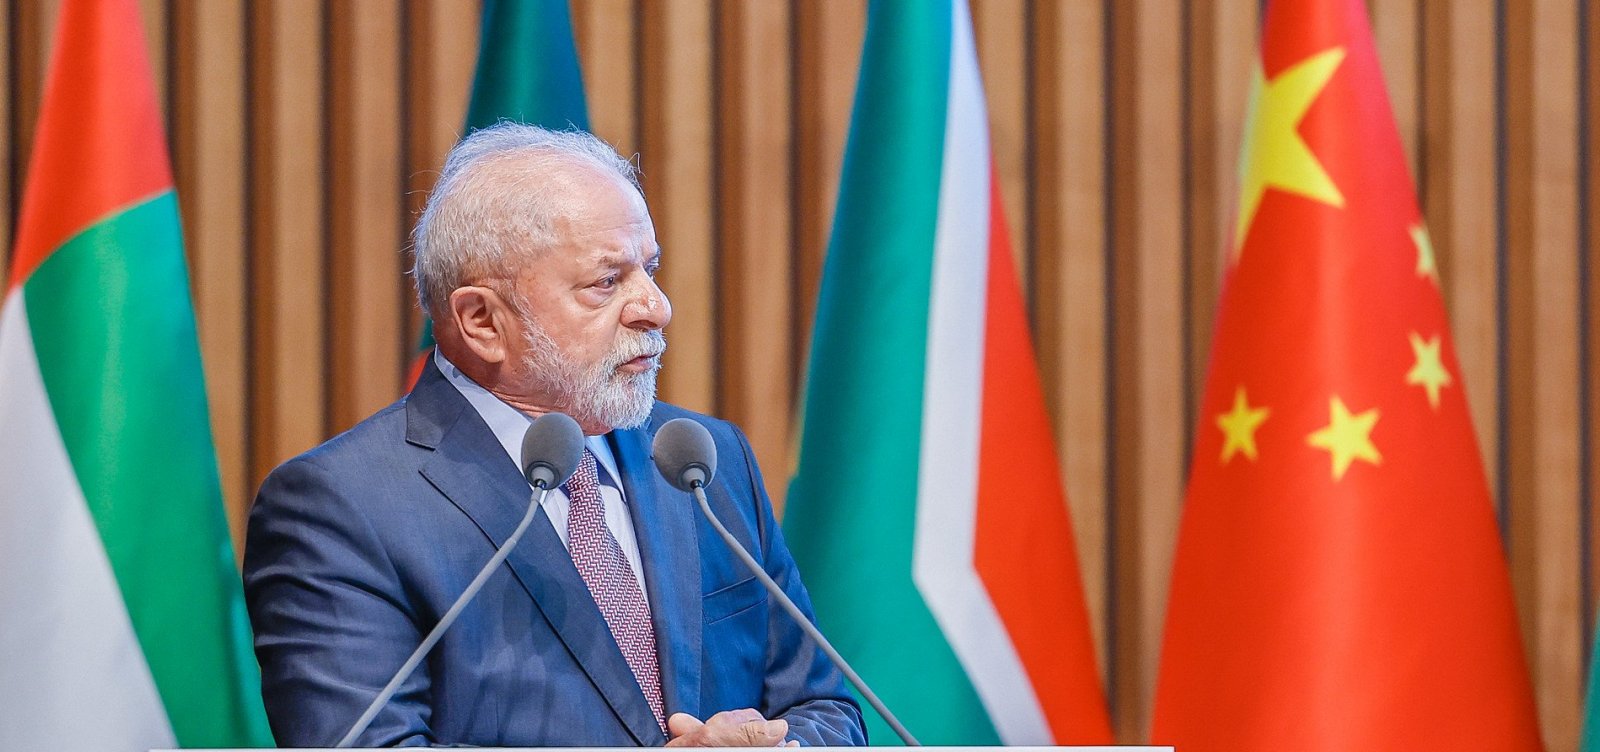 Casa Branca diz que é "profundamente problemática" postura de Lula sobre a Guerra da Ucrânia